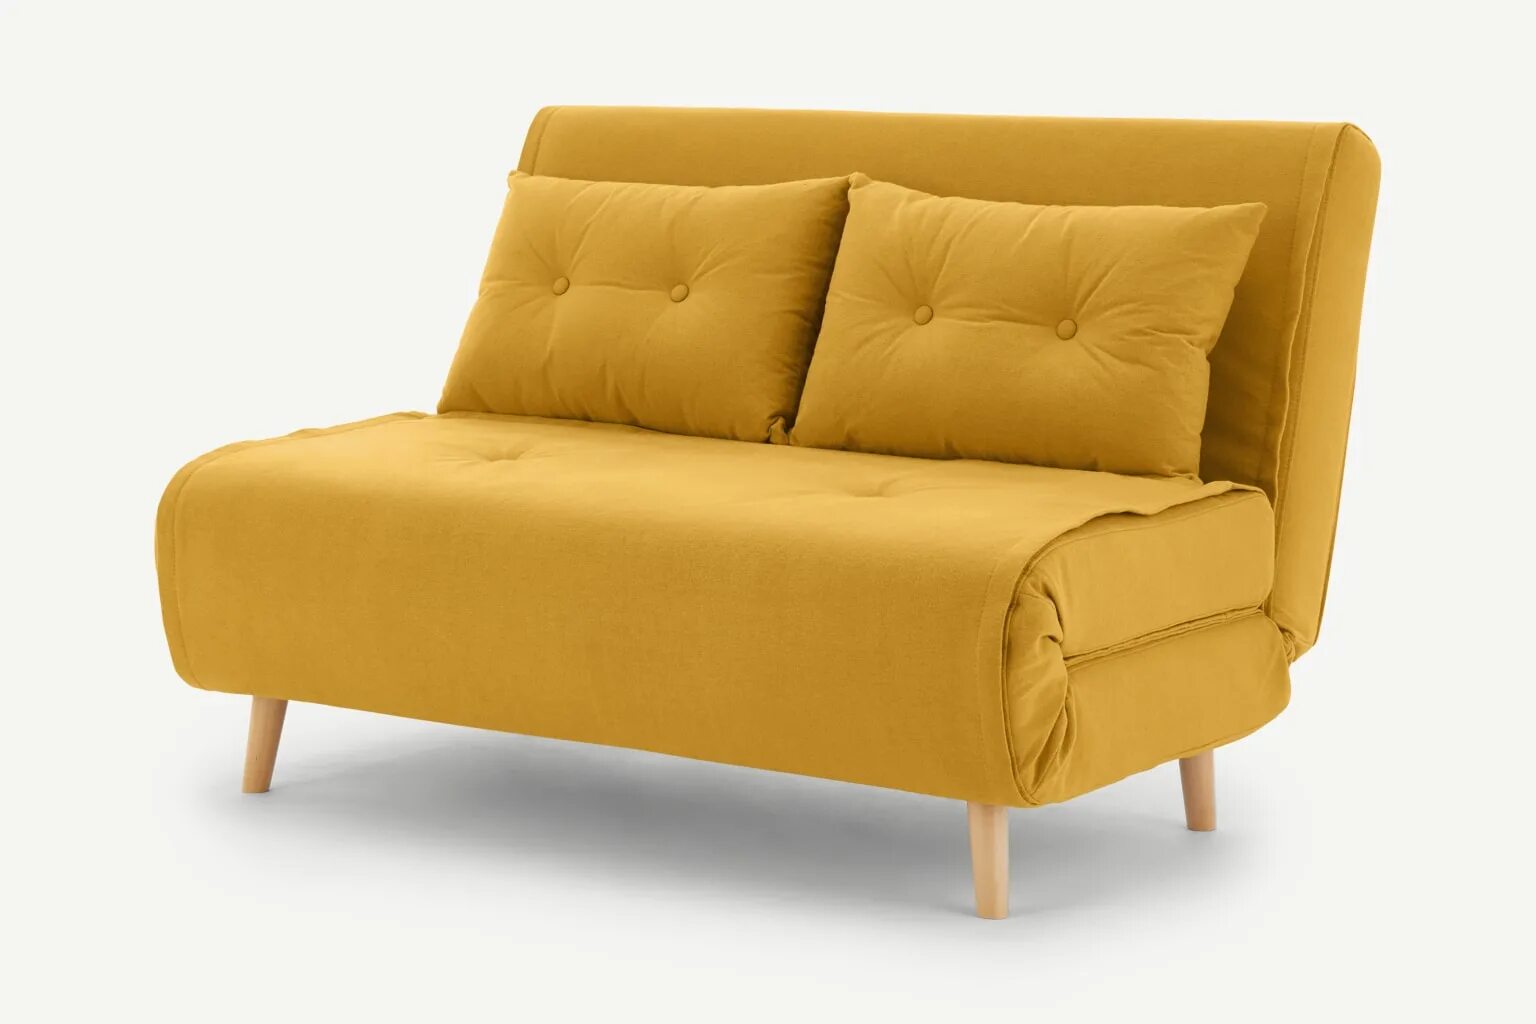 Купить диванчик. Кресло-кровать Haru. Желтый диван. Маленький желтый диван. Диван кровать желтый.